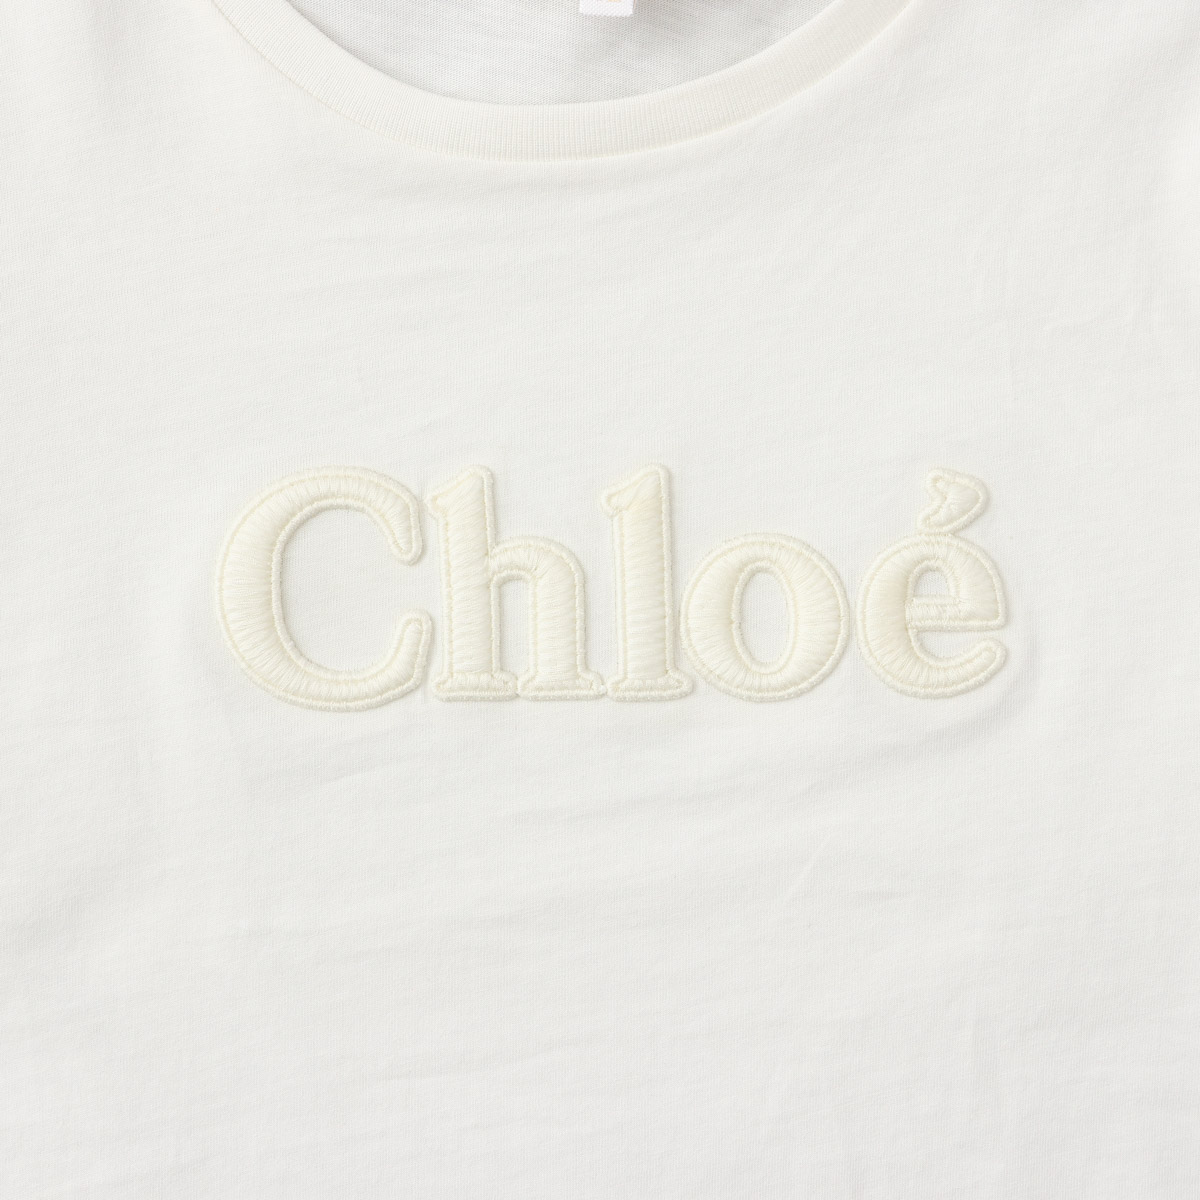 クロエキッズ CHLOE KIDS Tシャツ C15E35/117 KID GIRL クロエ Chle 